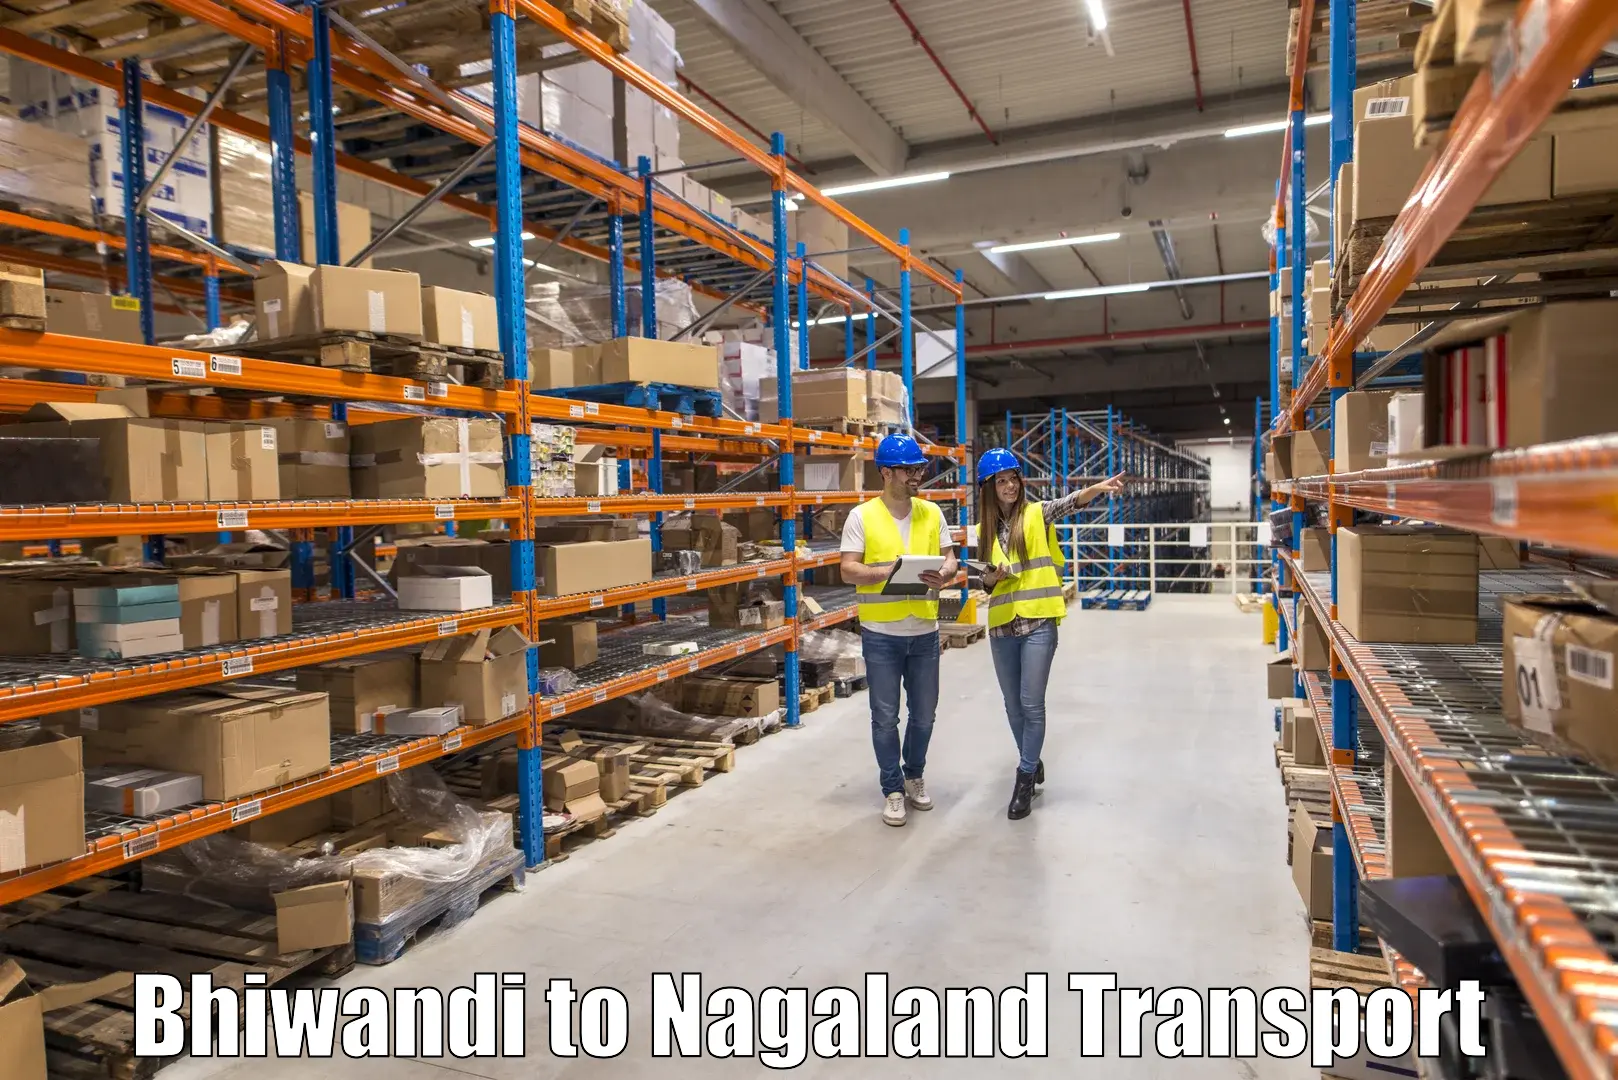 Bike shipping service Bhiwandi to NIT Nagaland